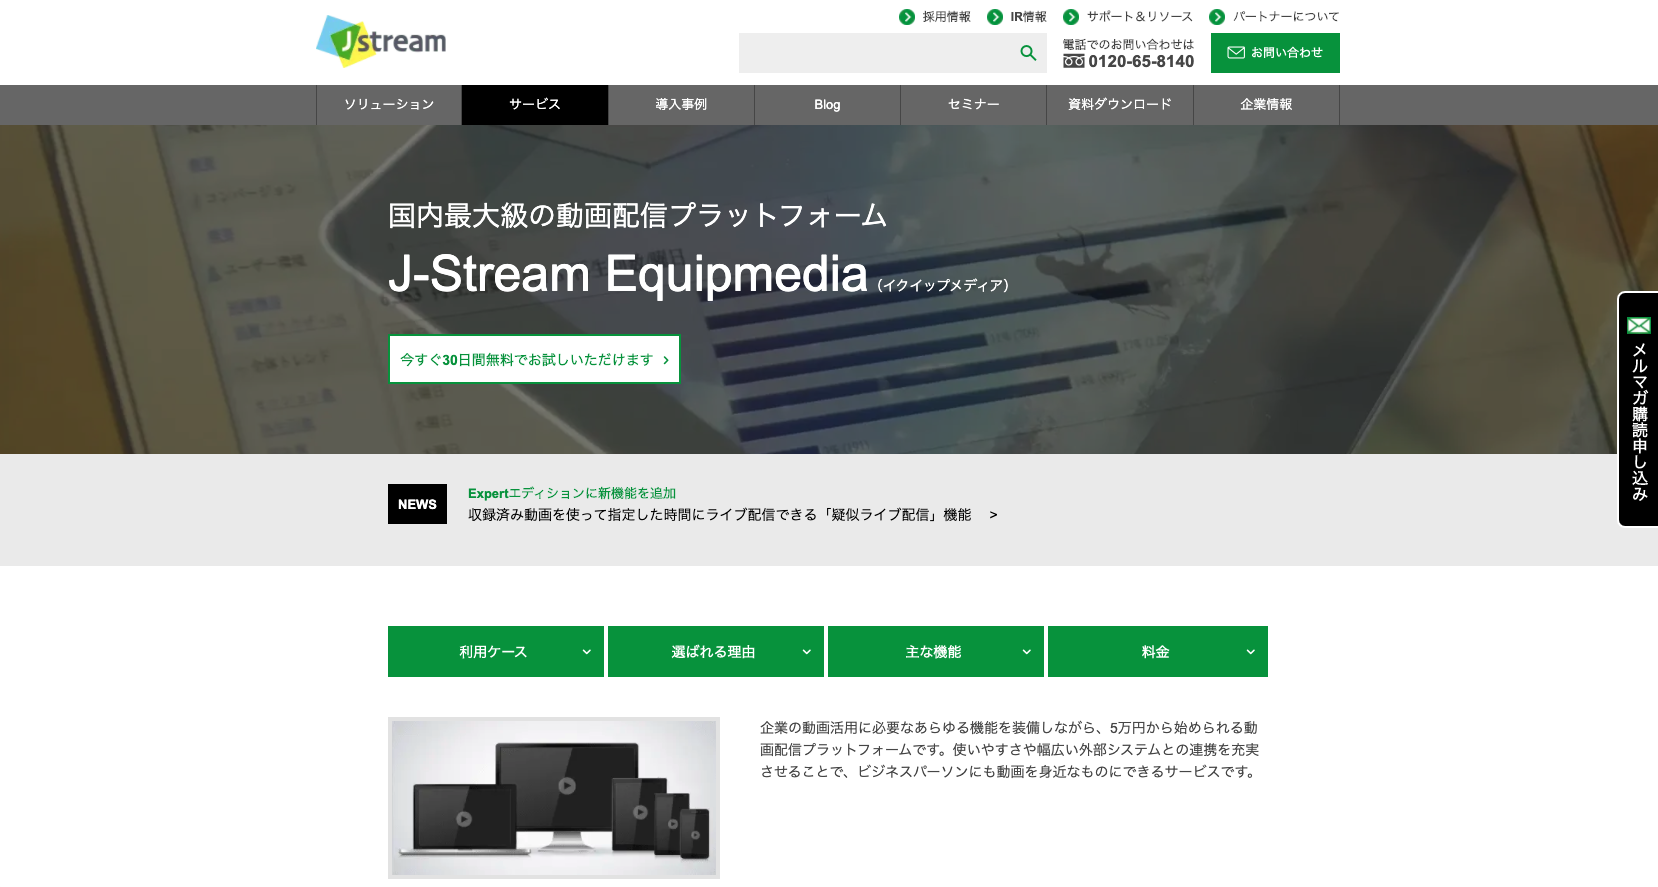 ウェビナーツール8：J-Stream Equipmedia